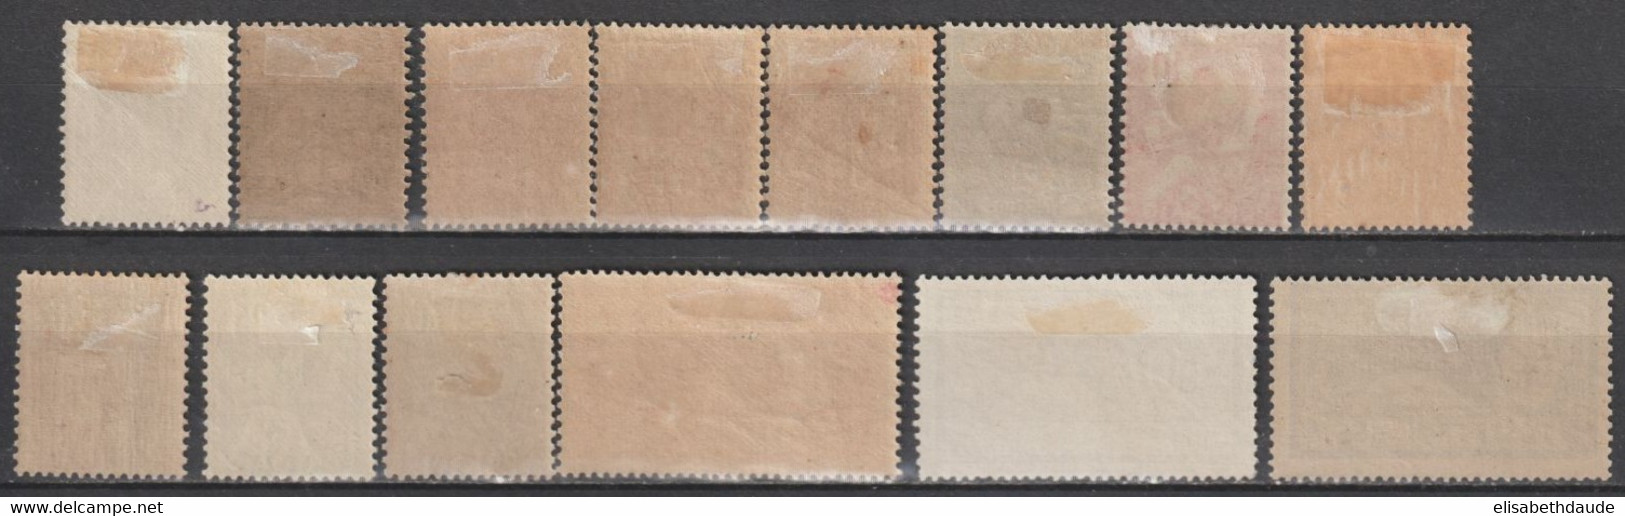 PORT SAÏD - 1902/1920 - YVERT N° 20/31 + 34 * MH - COTE = 89 EUR. - Unused Stamps